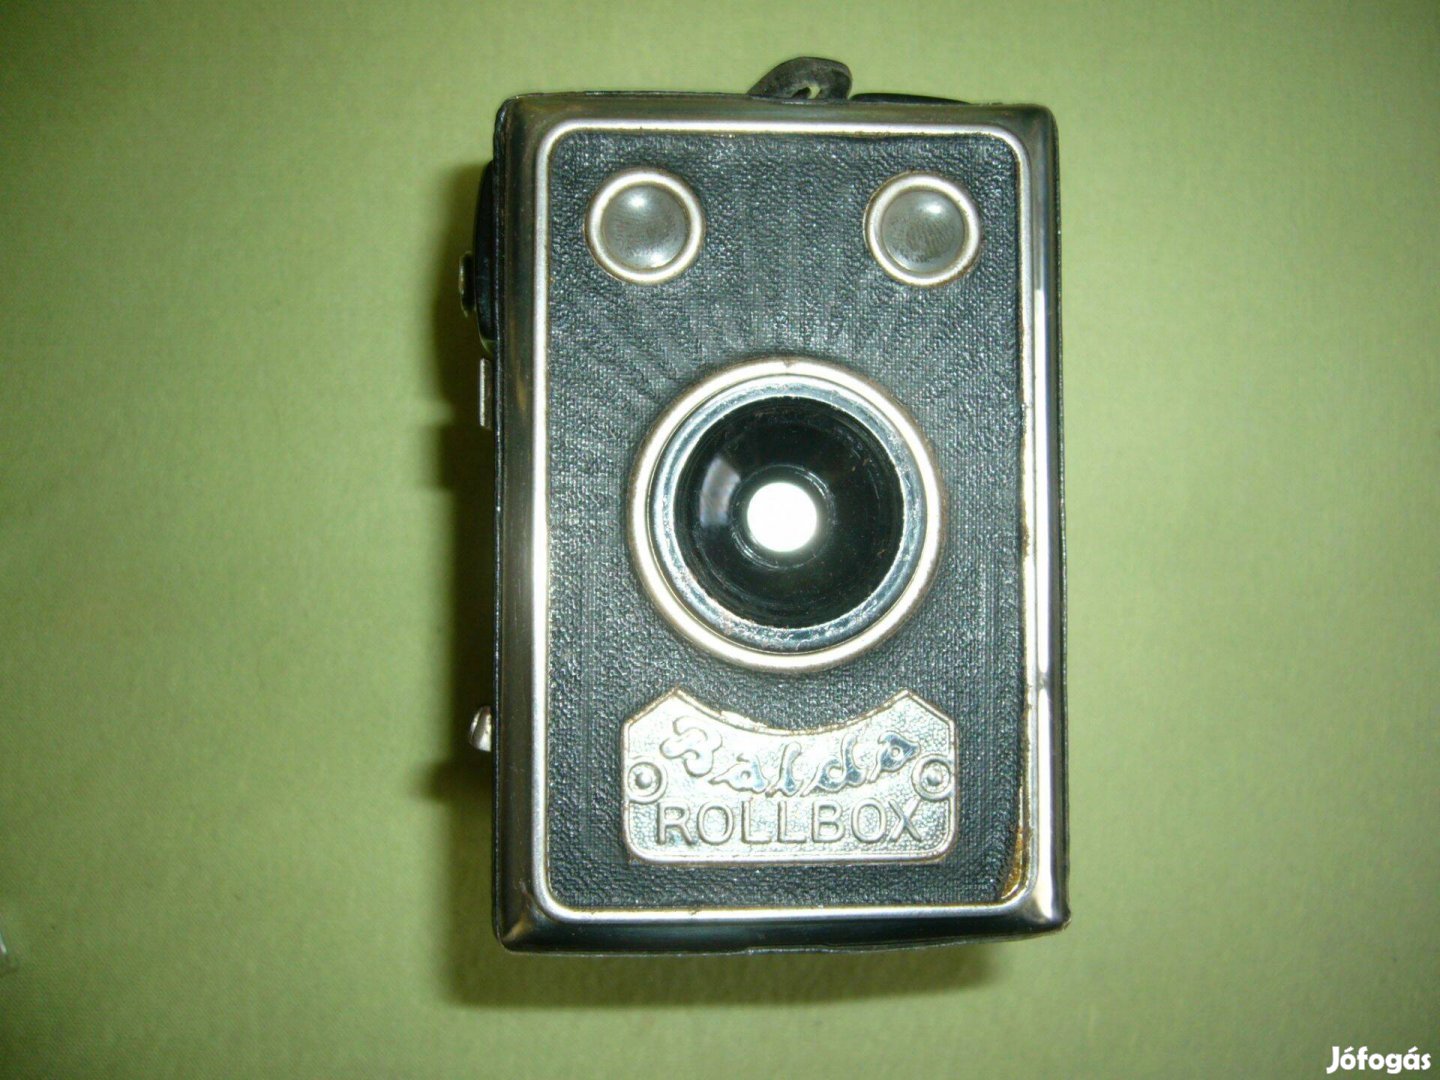 Retro Balda rollbox fényképező gép